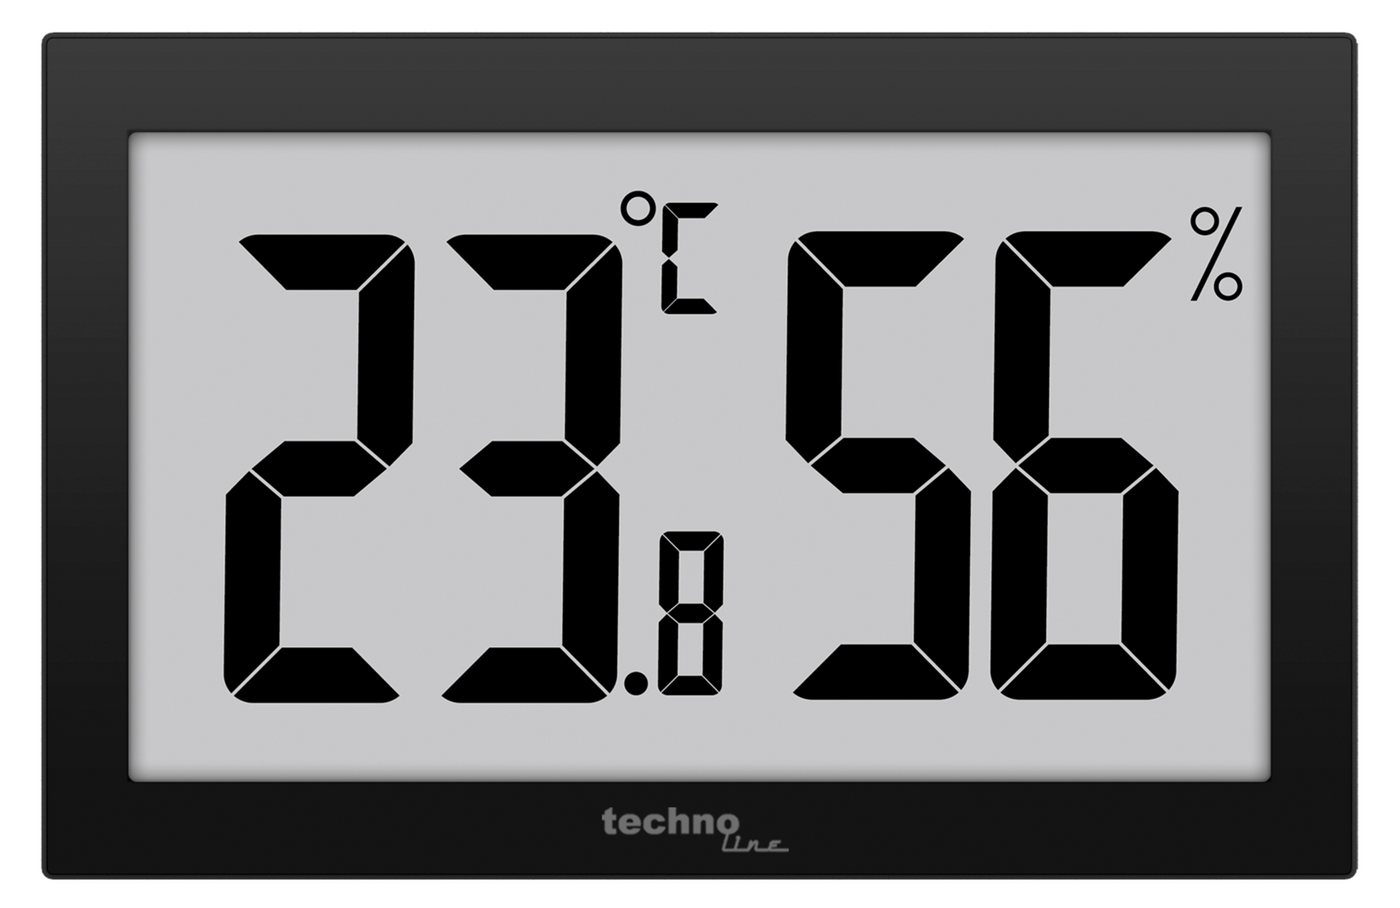 technoline WS 9465 Wetterstation (mit großes Anzeige für Temperatur und Luftfeuchte) von technoline